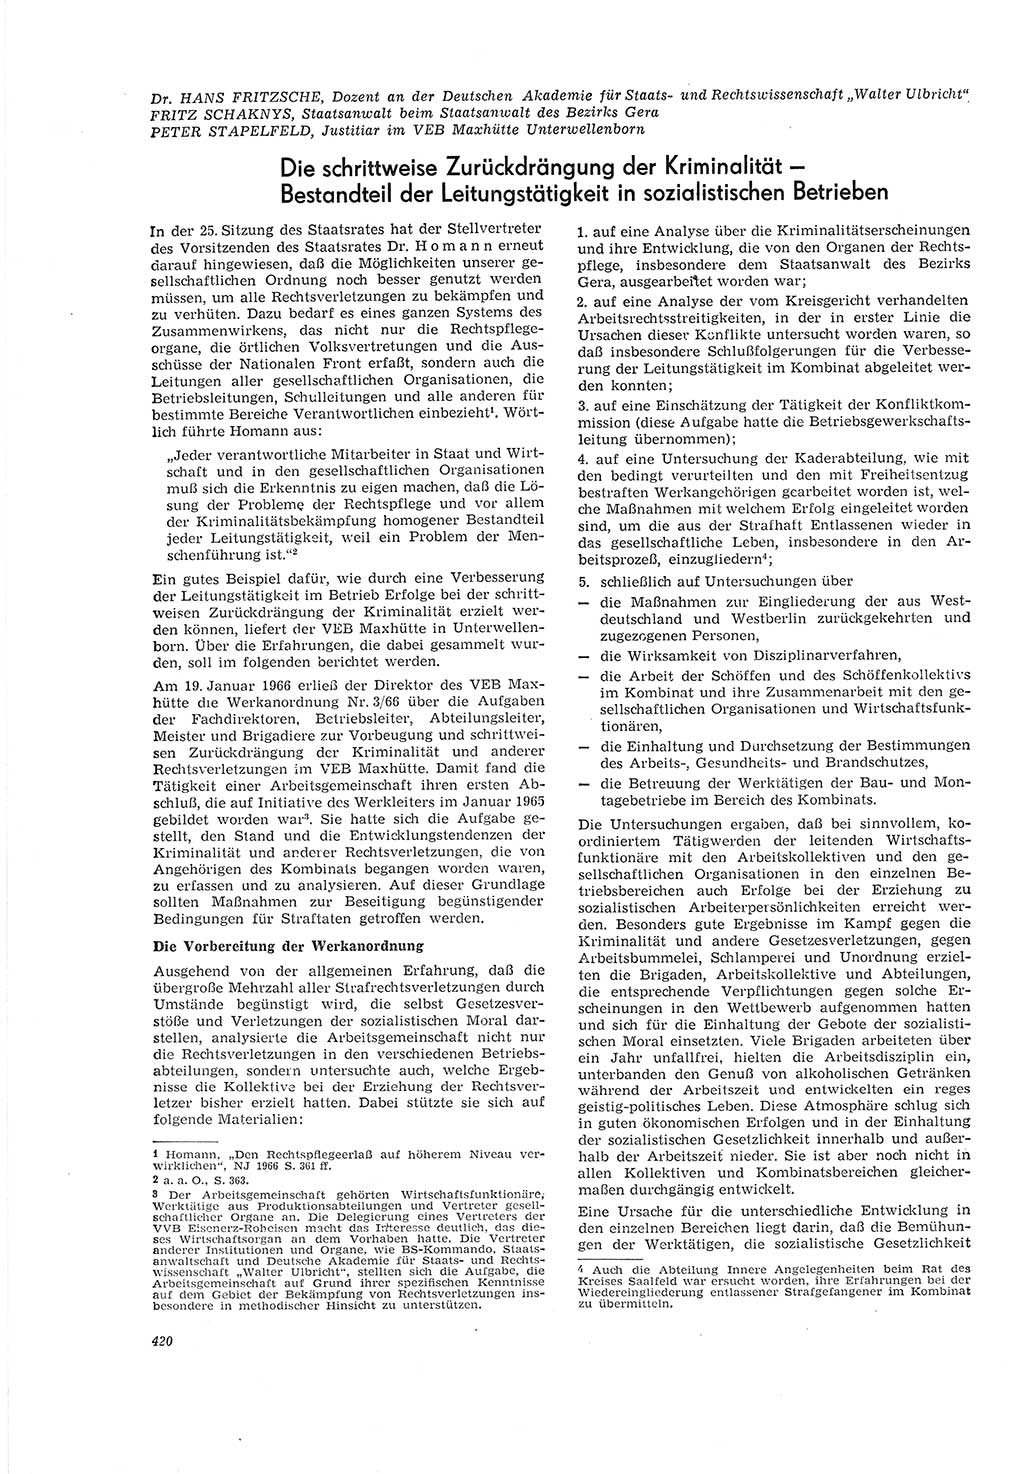 Neue Justiz (NJ), Zeitschrift für Recht und Rechtswissenschaft [Deutsche Demokratische Republik (DDR)], 20. Jahrgang 1966, Seite 420 (NJ DDR 1966, S. 420)